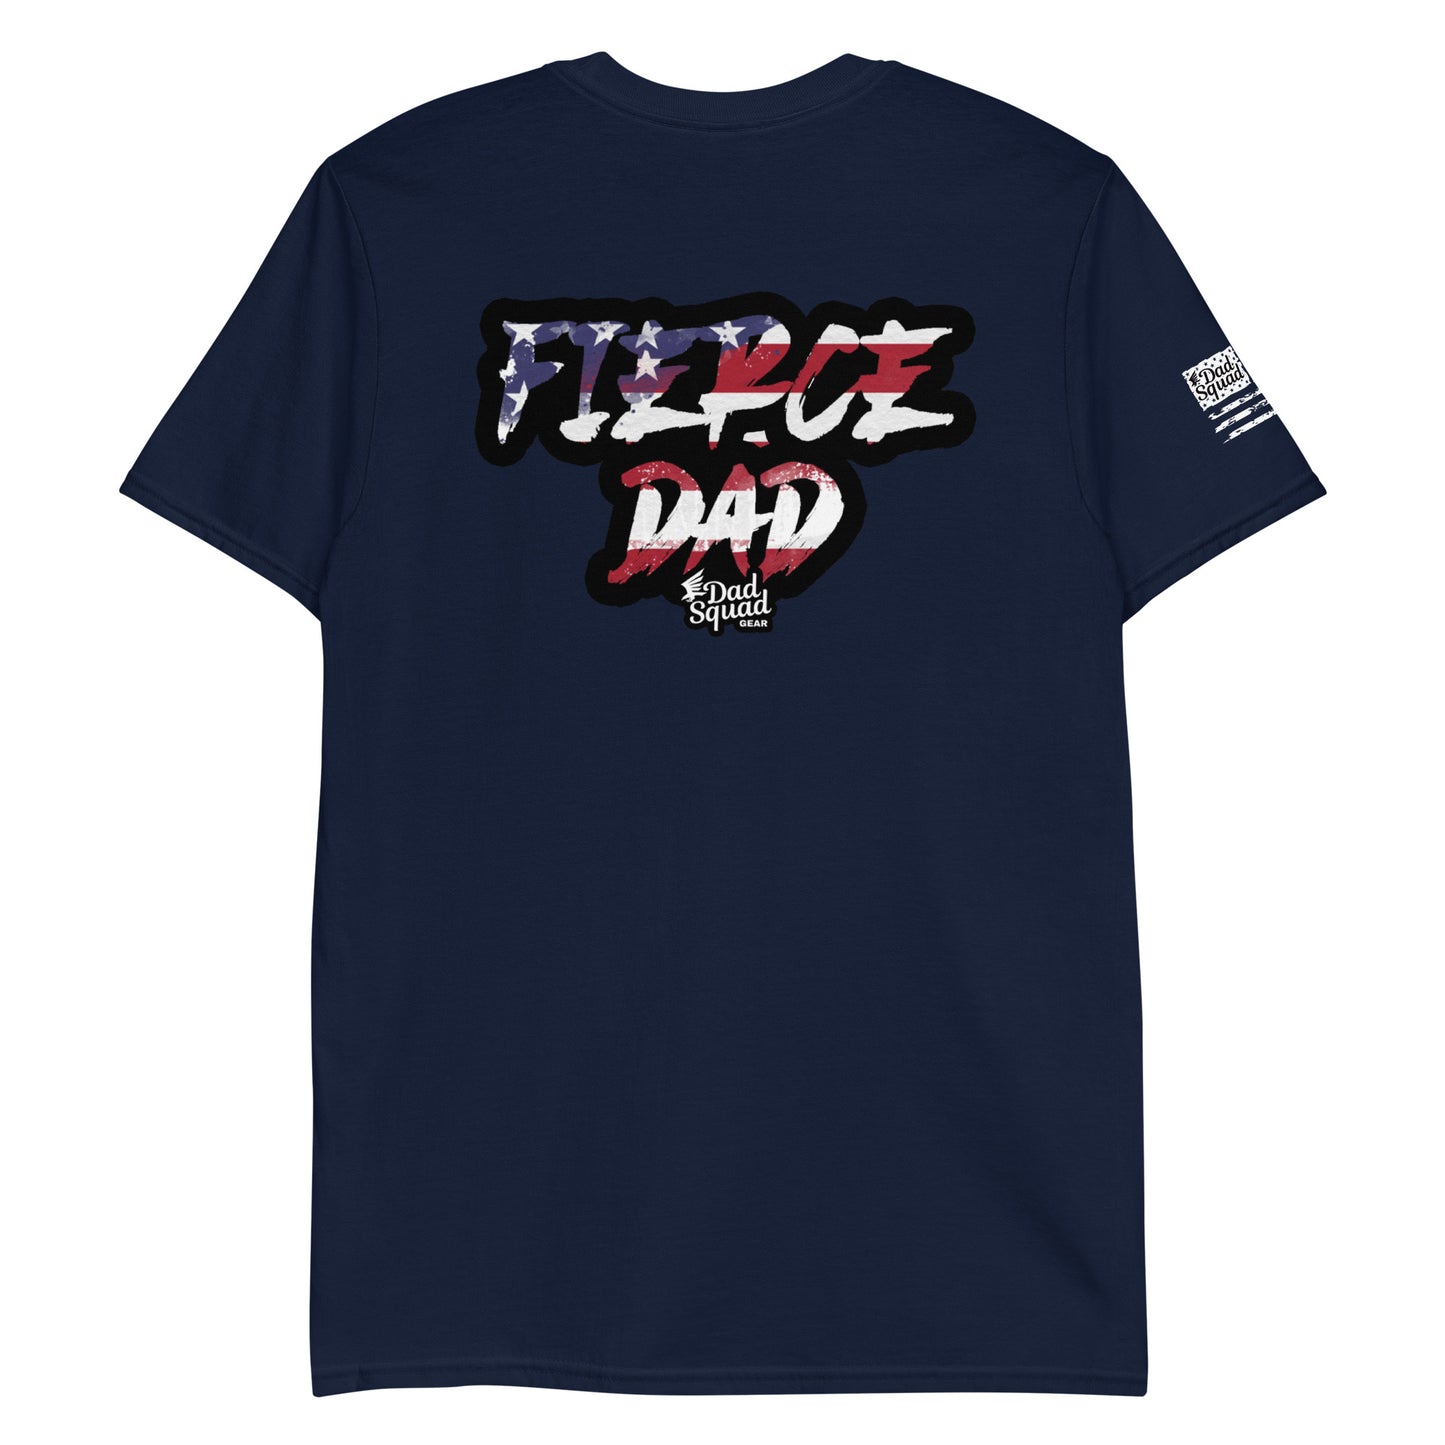 Dad Squad Short-Sleeve T-Shirt - Fierce Dad